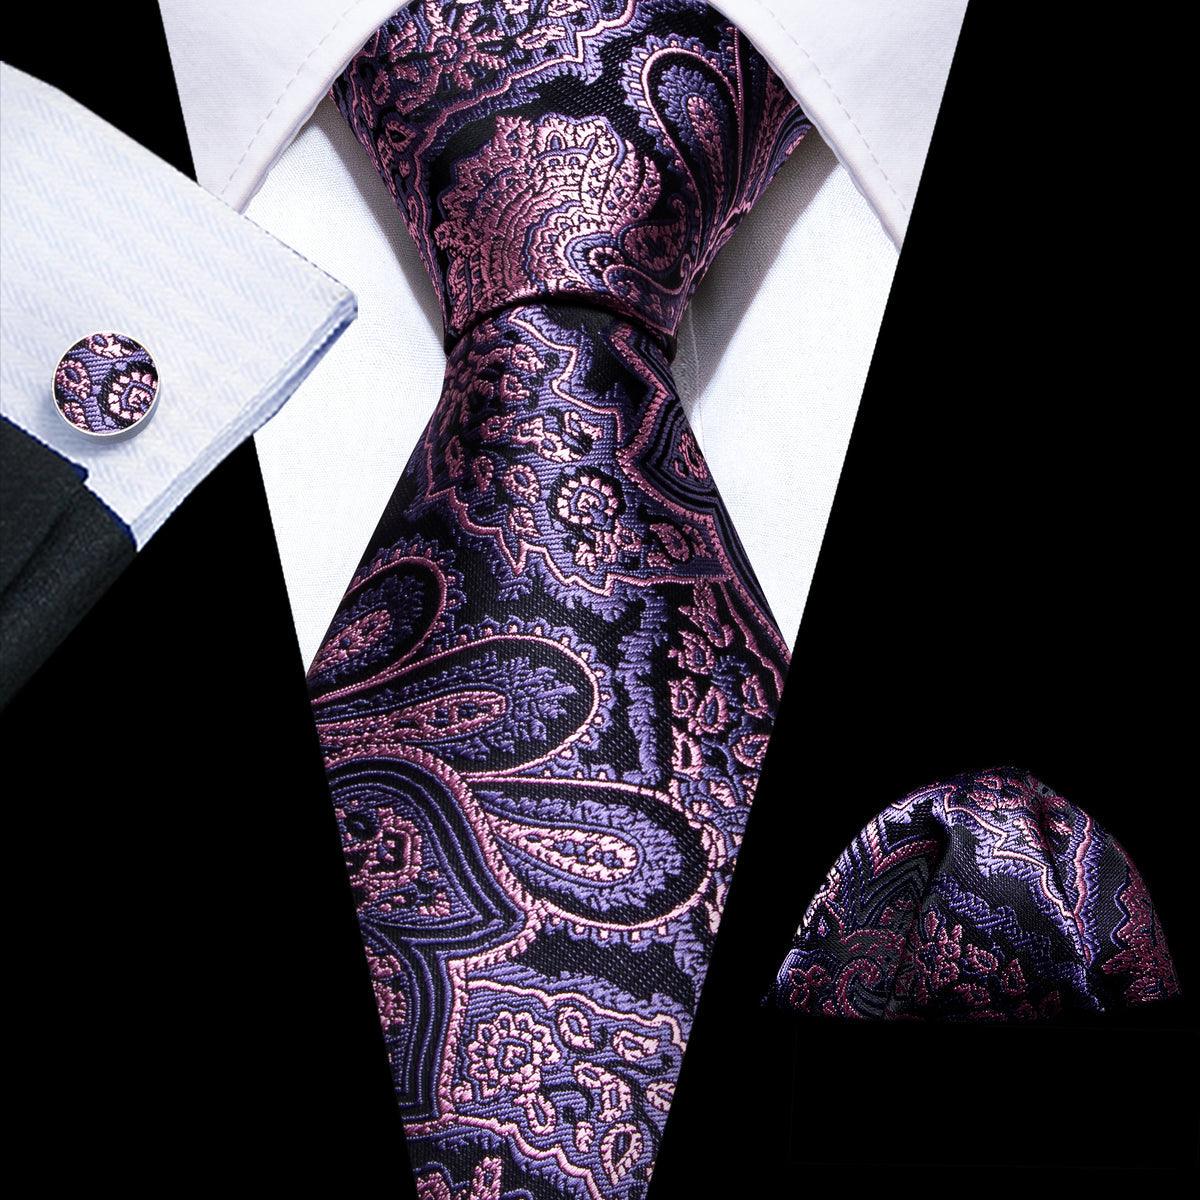 Purple Pink Paisley Silk Tie Pocket Square Cufflink Set - STYLETIE